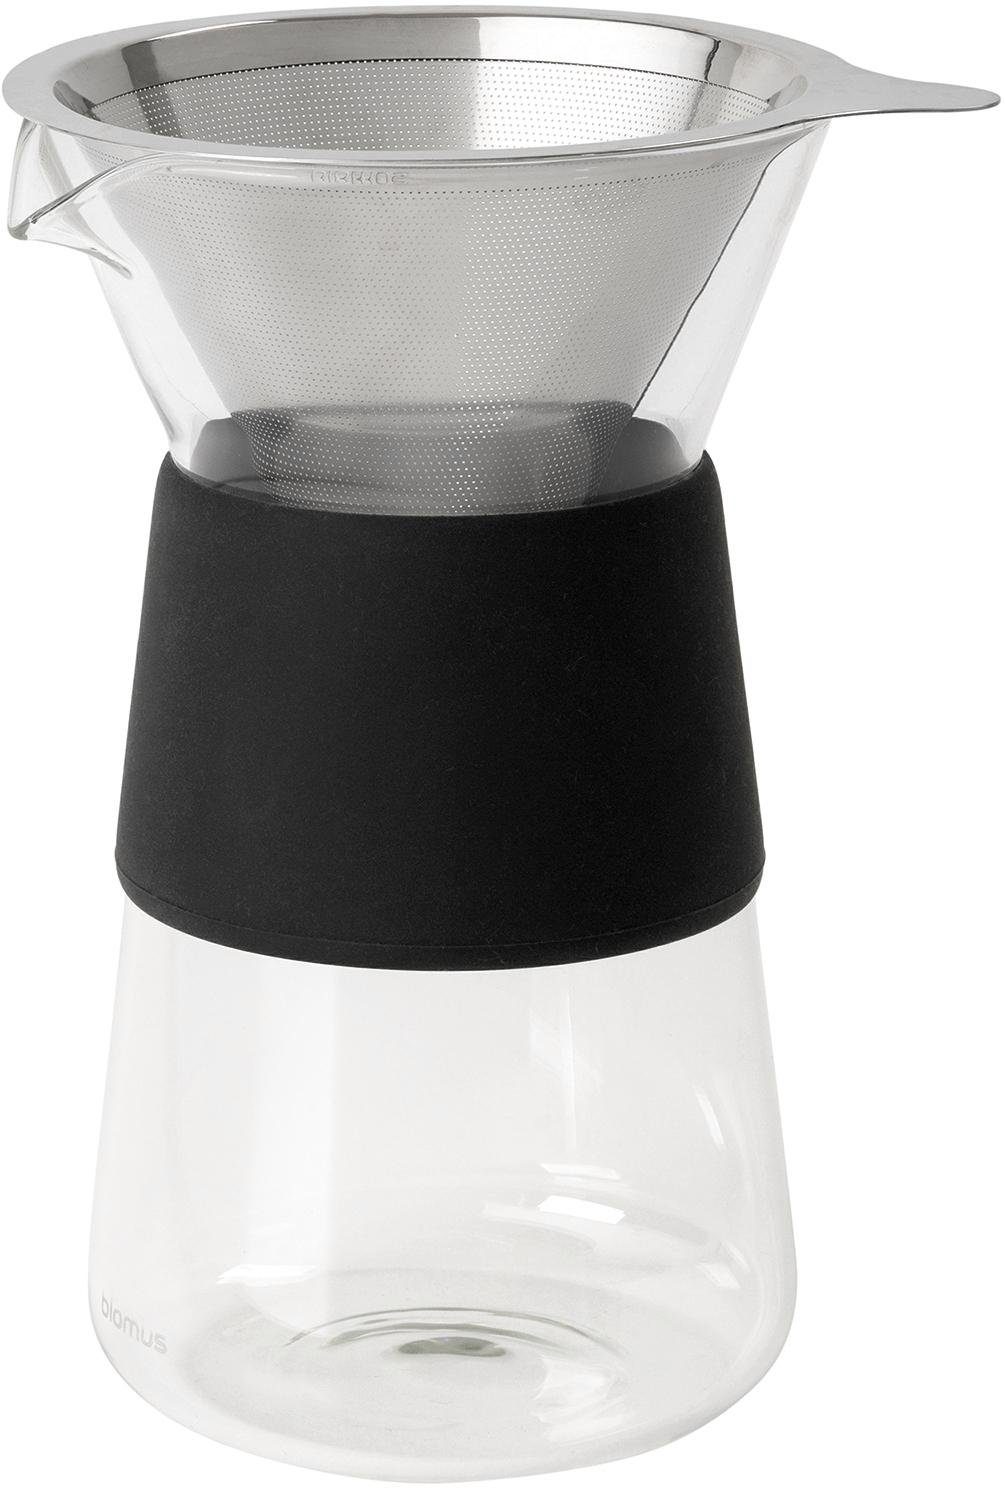 400ml Kaffeebereiter Manuelle Hand Tropf Glas Kaffeekanne mit Edelstahl Filter♥ 